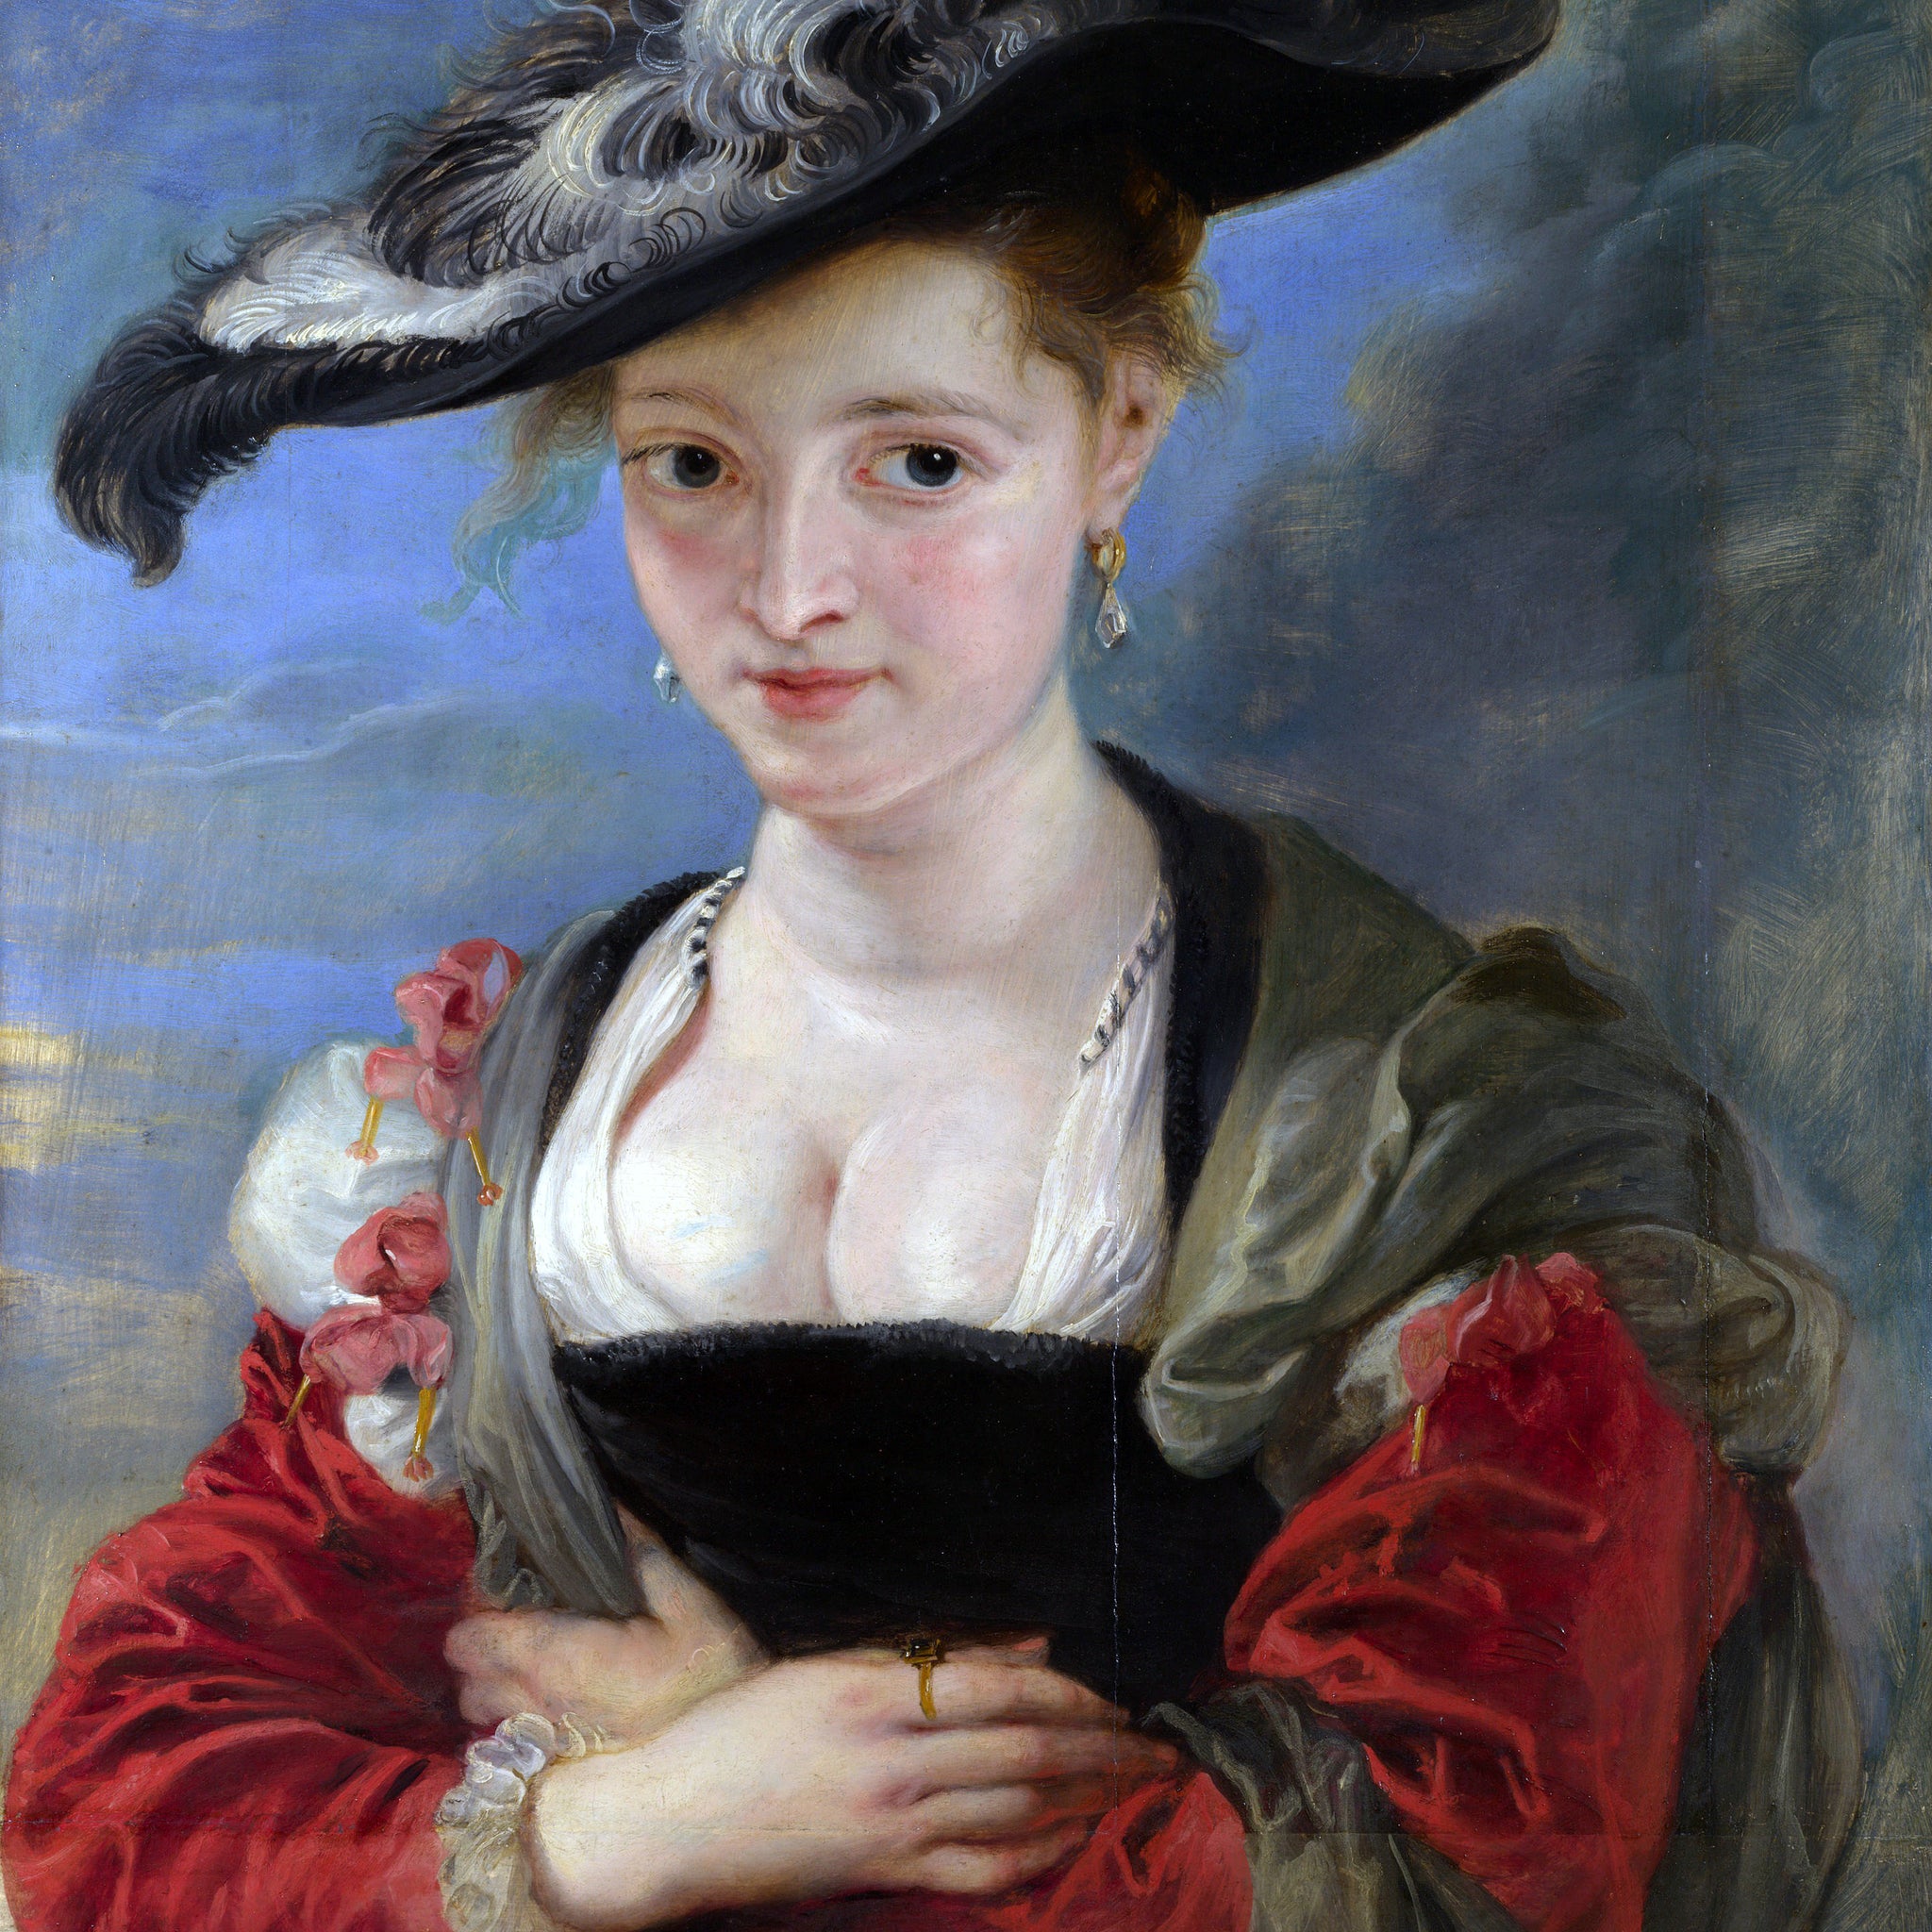 Le Chapeau de paille - Peter Paul Rubens